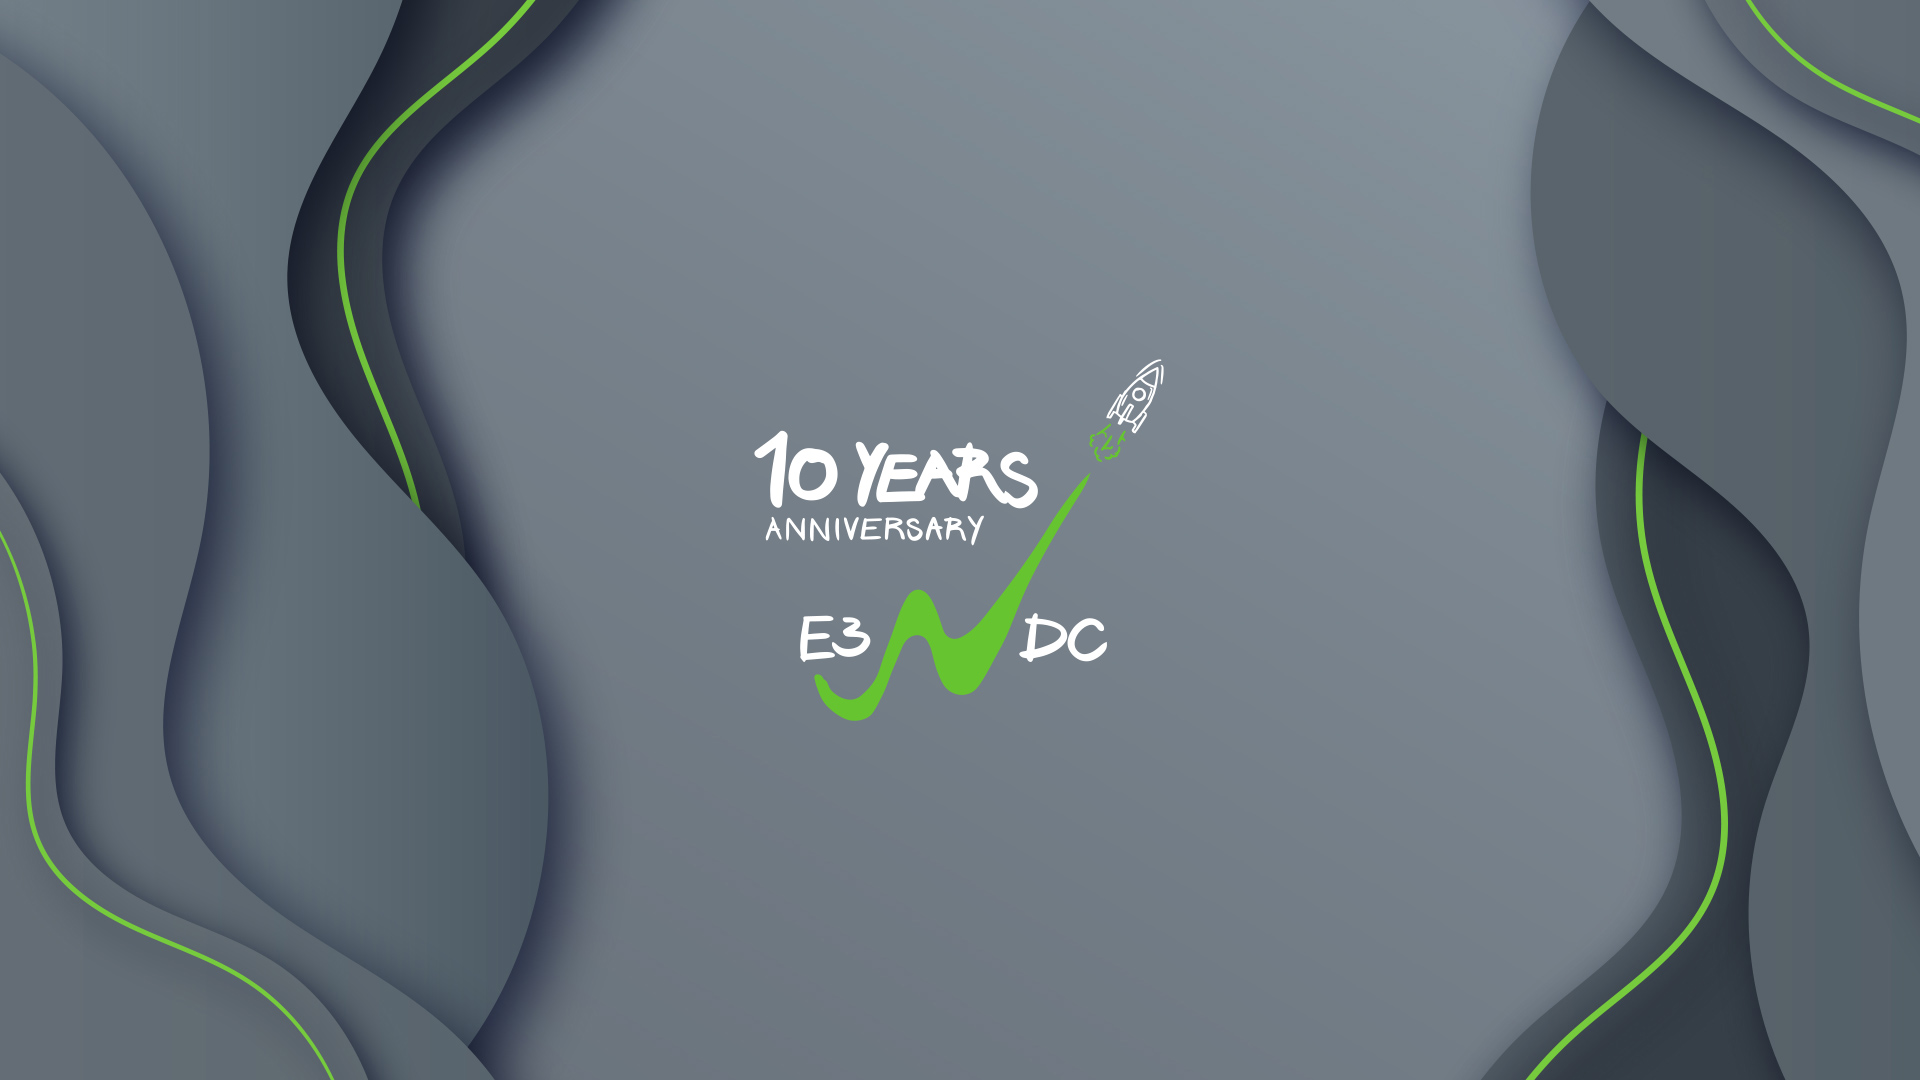 10 Jahre E3/DC: Eine Erfolgsgeschichte mit Zukunft